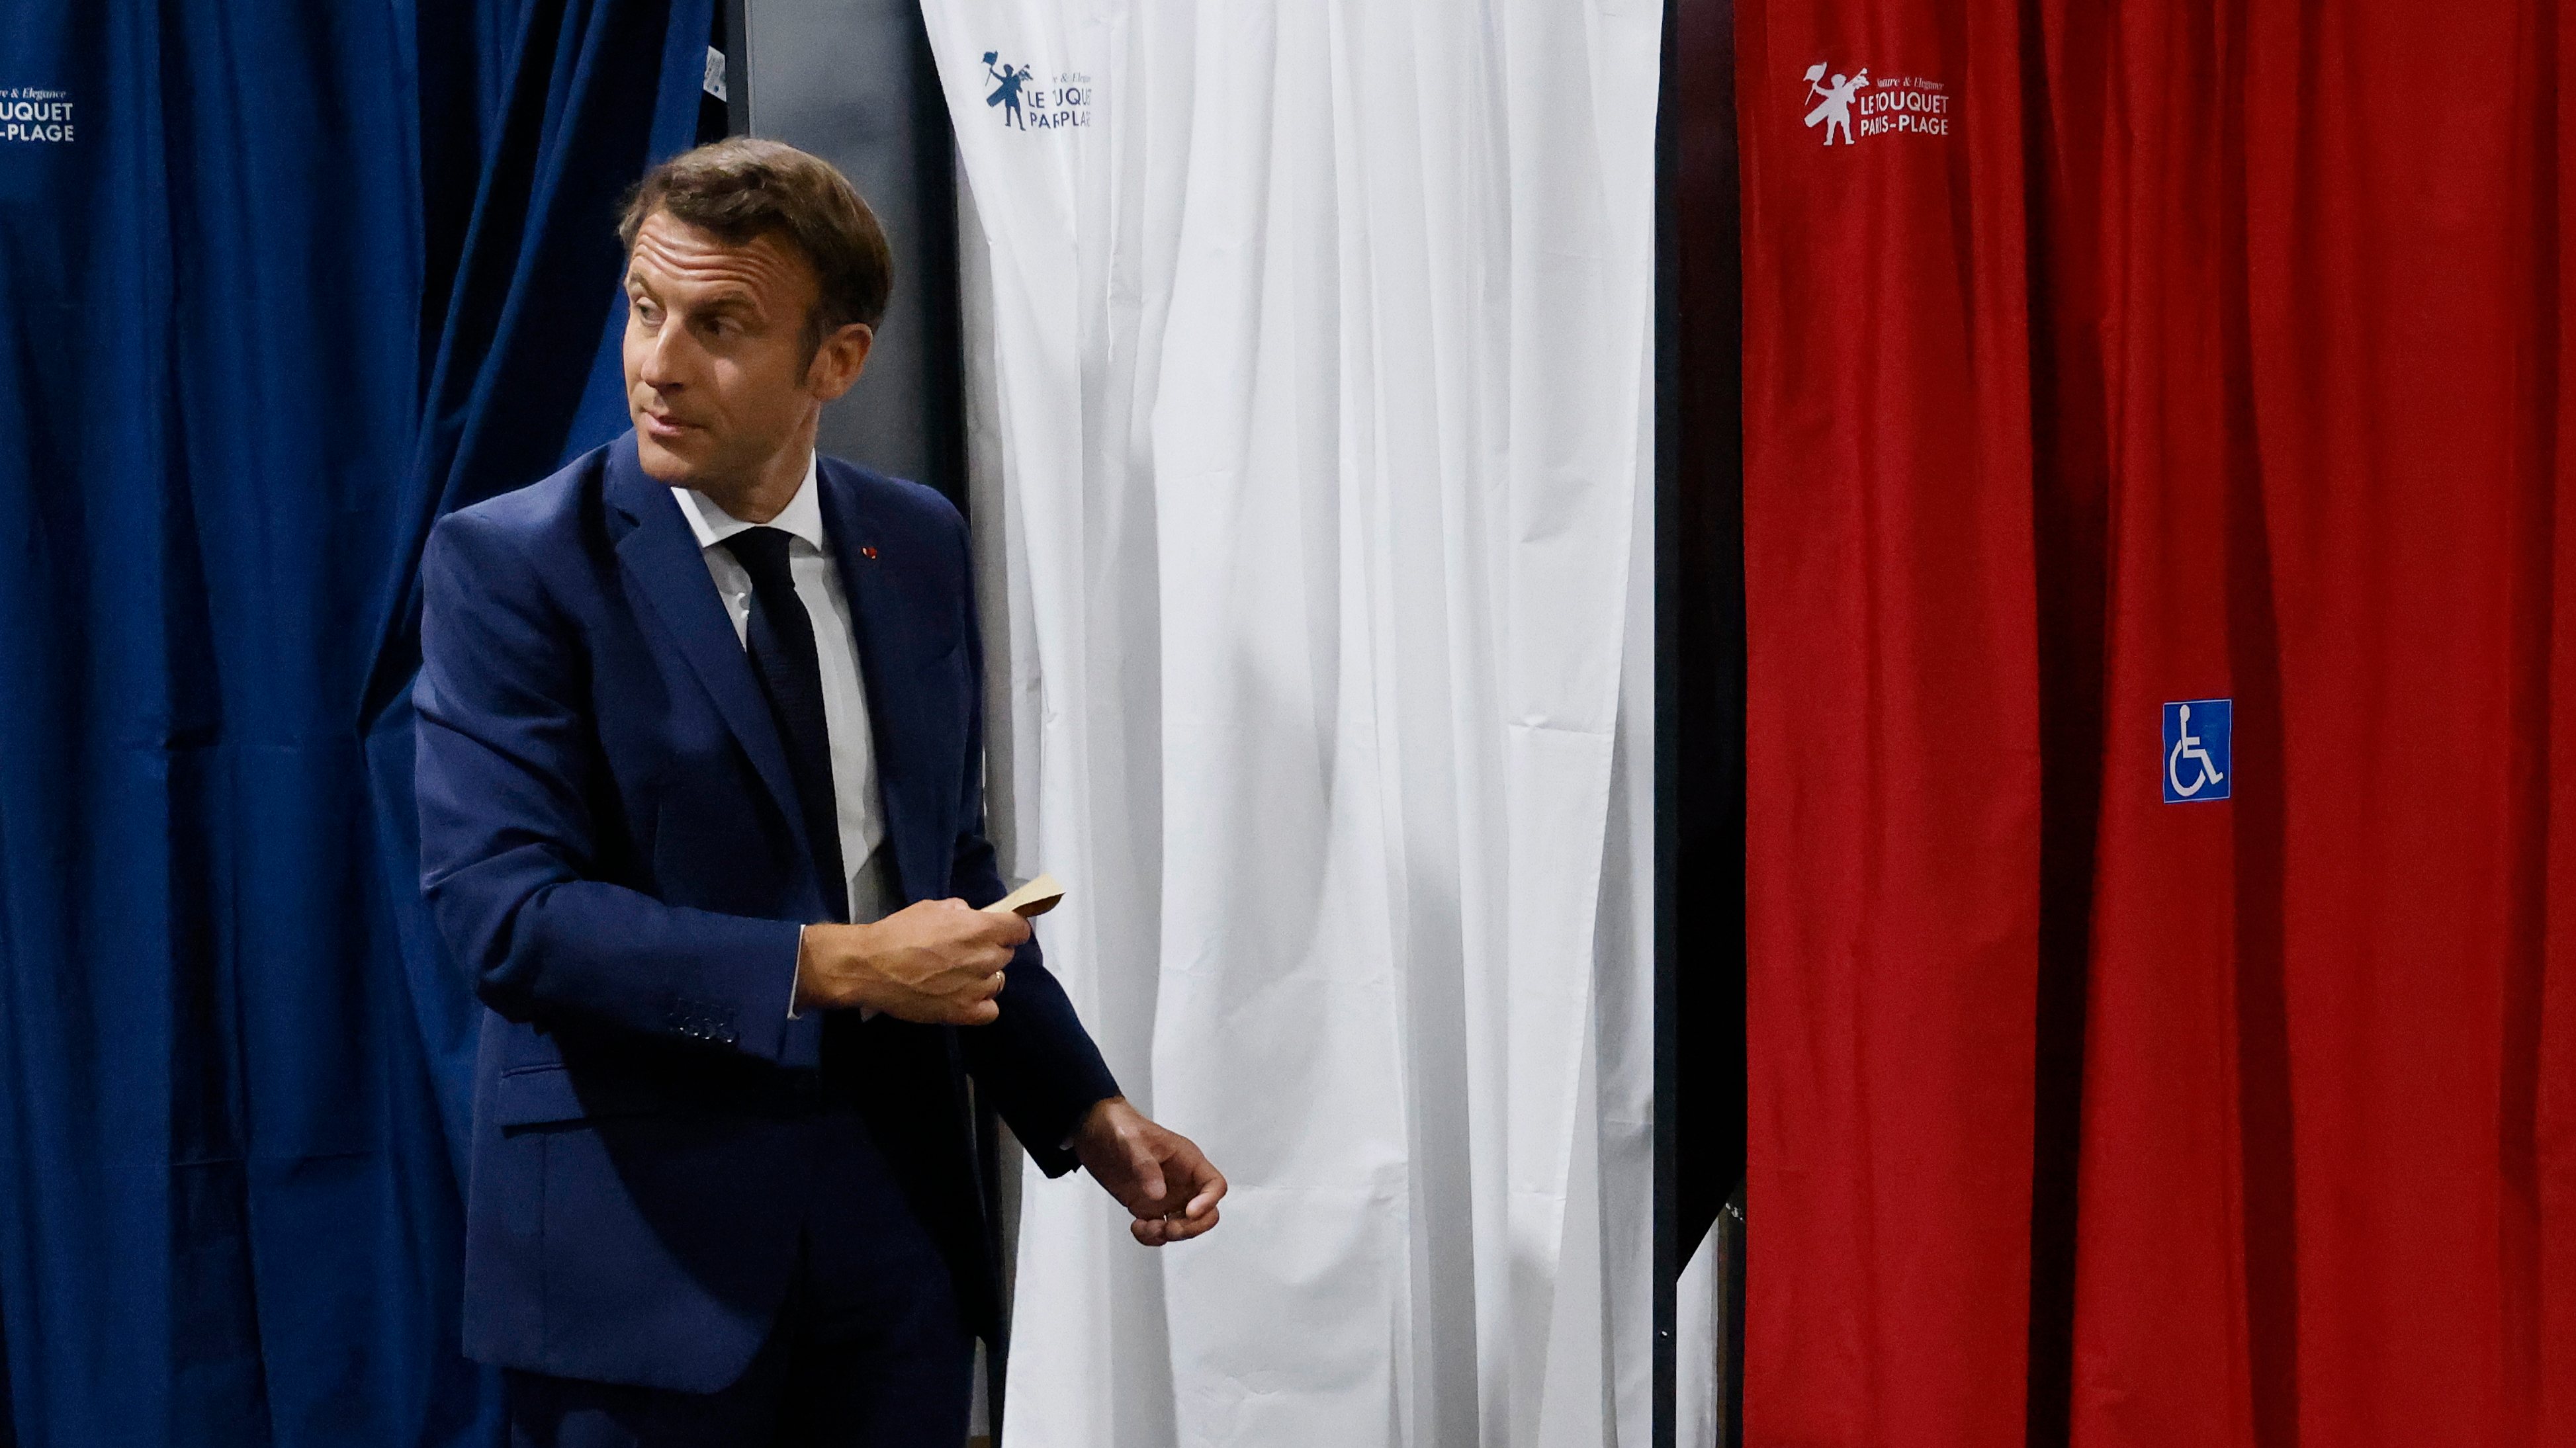 Partido de Macron vence 1.ª volta, mas arrisca-se a não conseguir a maioria absoluta por causa da geringonça de esquerda de Mélenchon